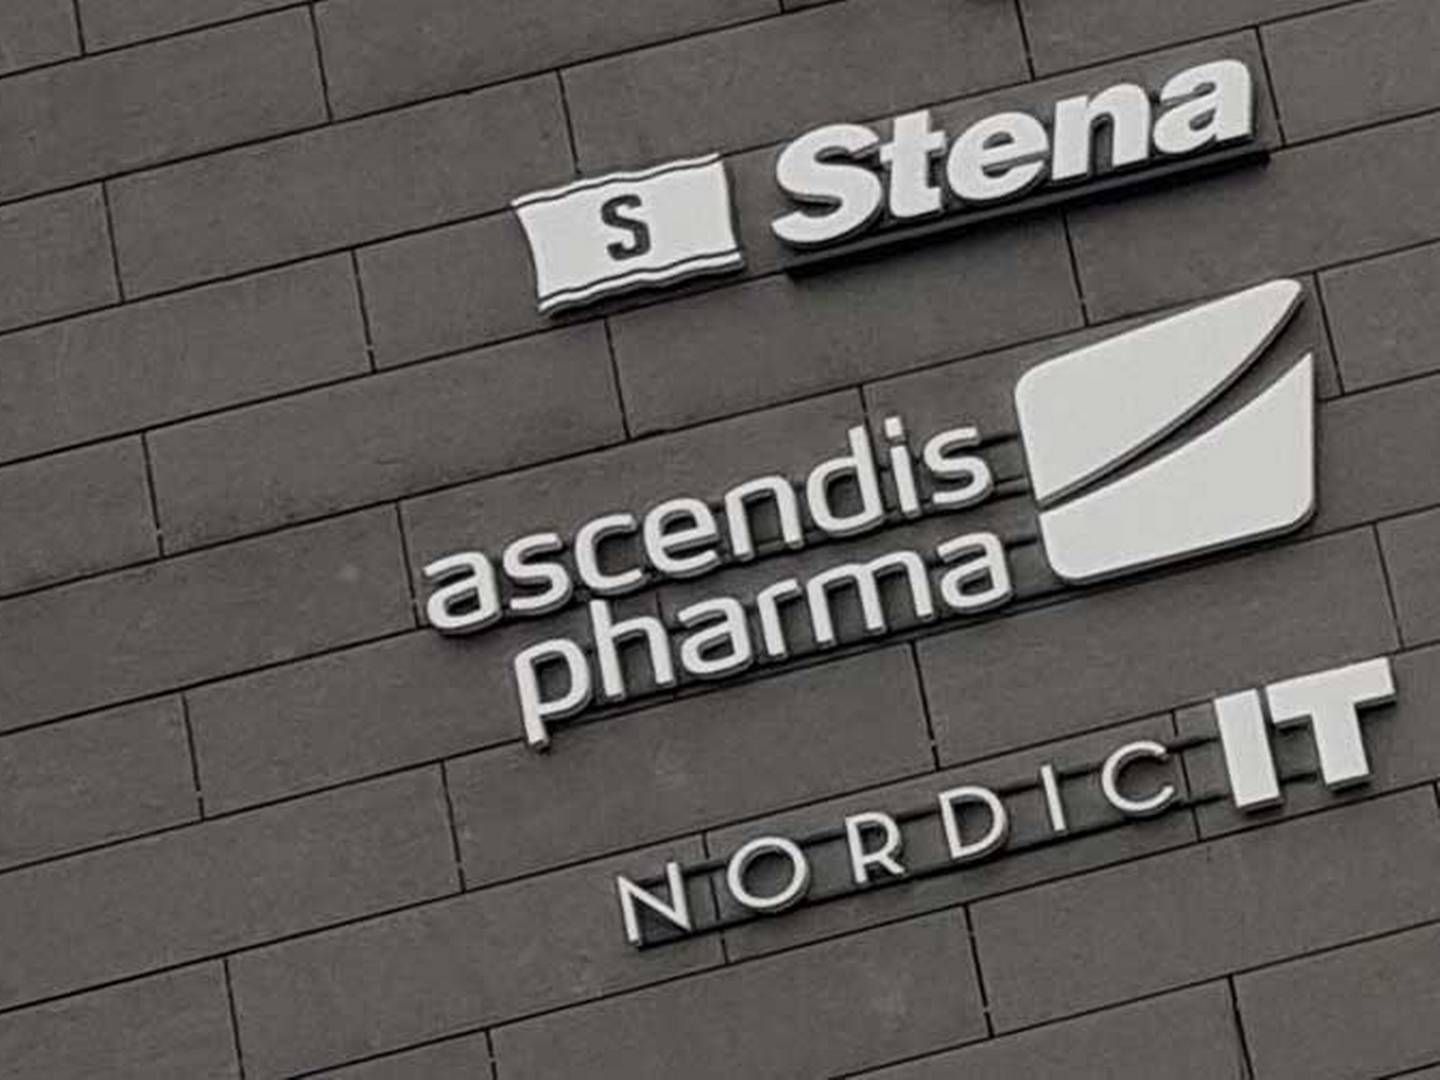 Ascendis Pharma har ikke et fuldt overblik over markedspotentialet for selskabets lægemiddel Yorvipath i Storbritannien, hvor det netop er levet godkendt. | Photo: Kevin Grønnemann / Medwatch